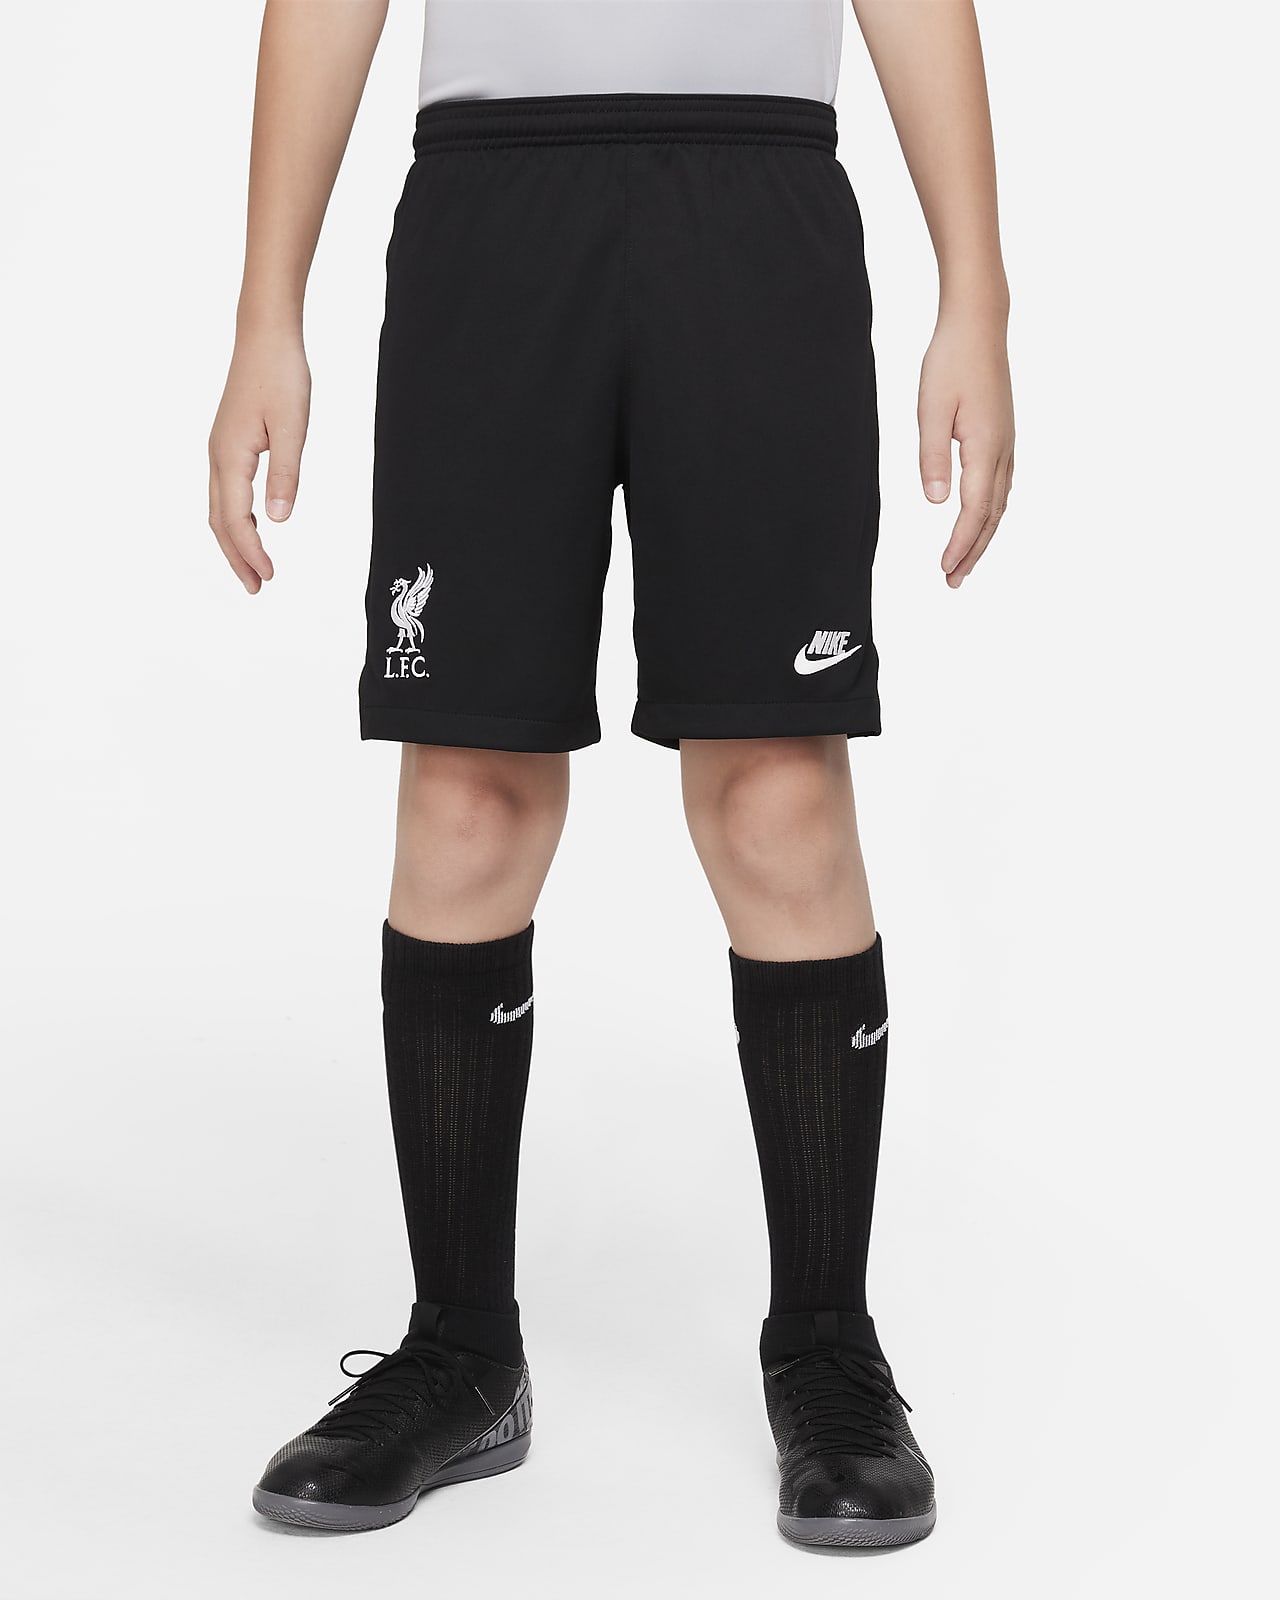 Equipación de portero Stadium Liverpool FC 2021/22 Pantalón corto de fútbol - Niño/a